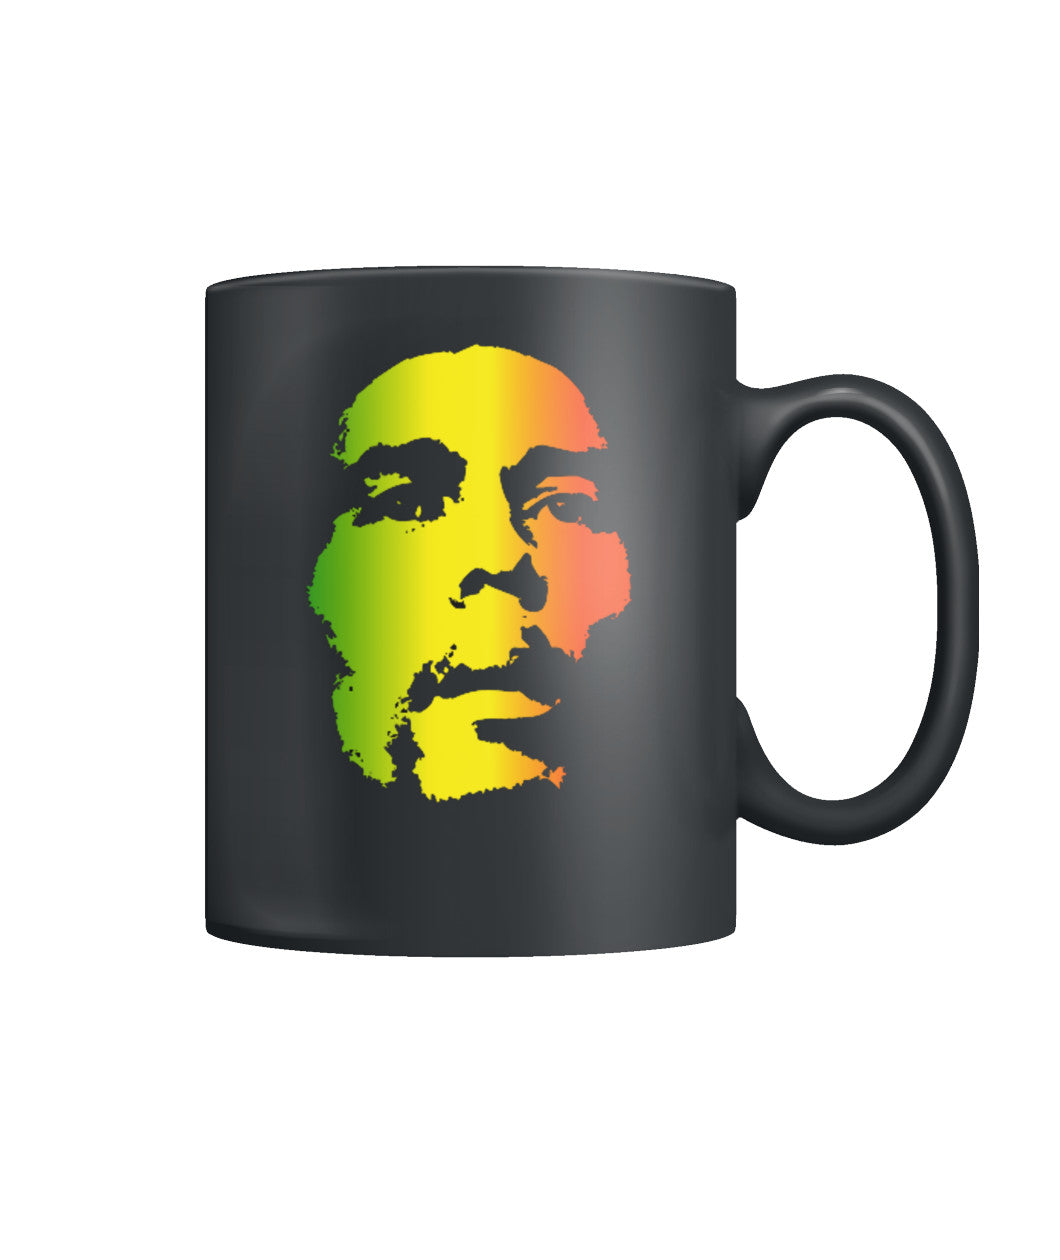 Bob Marley "A fool is thirsty" Coffee Mug 